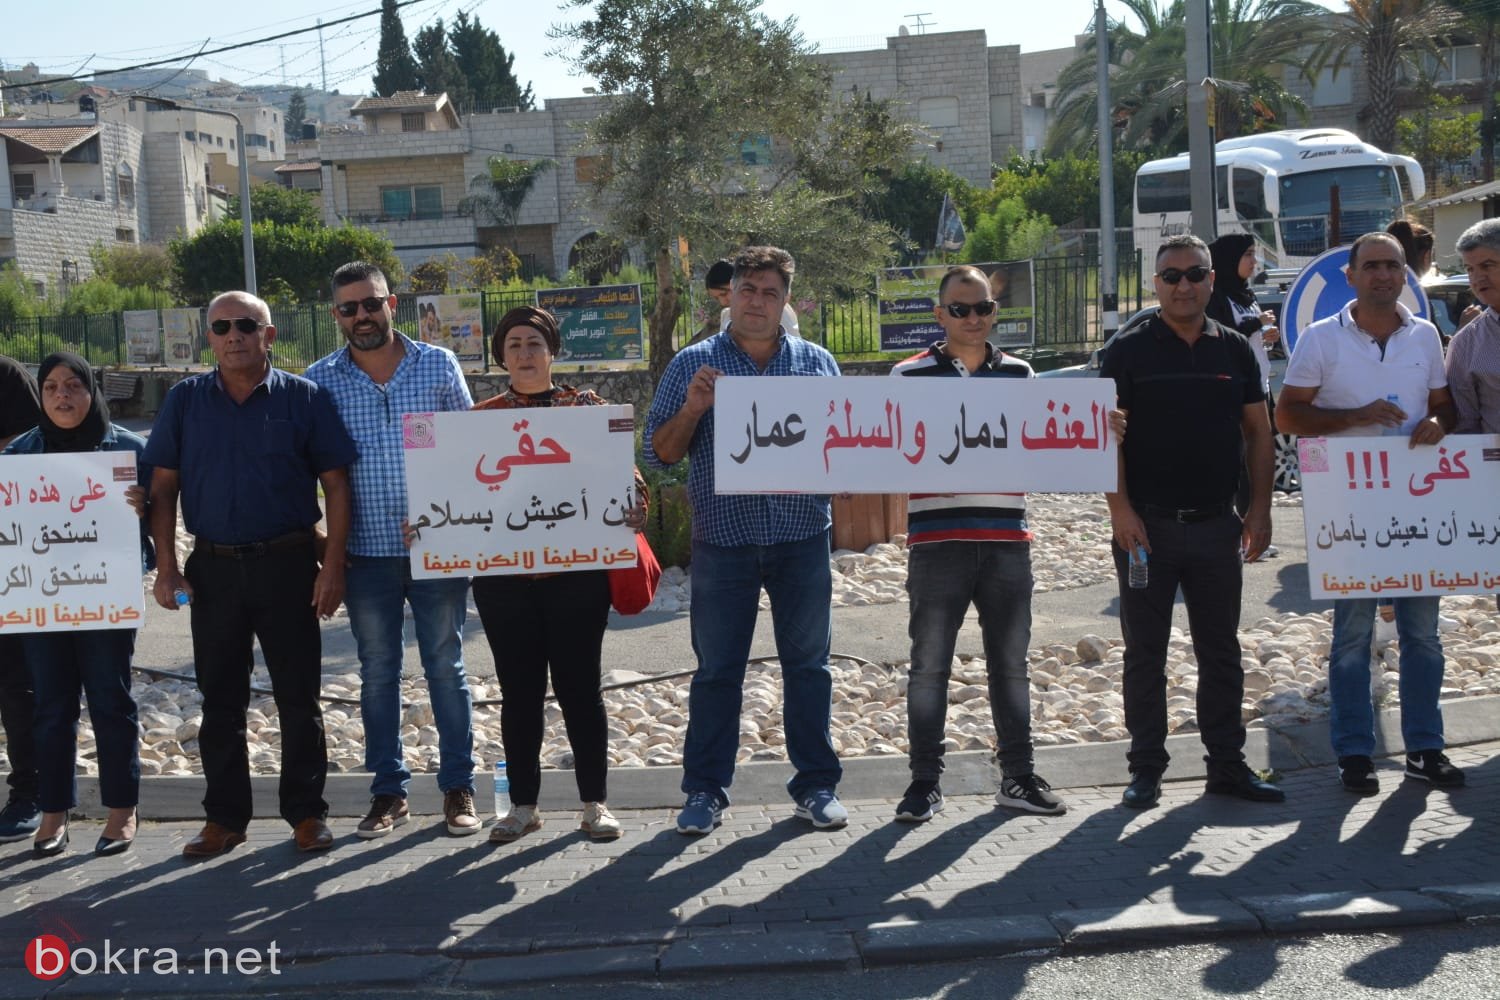 الرينة: موظفو وأعضاء المجلس يتظاهرون احتجاجًا على الاعتداء على زميلهم-17